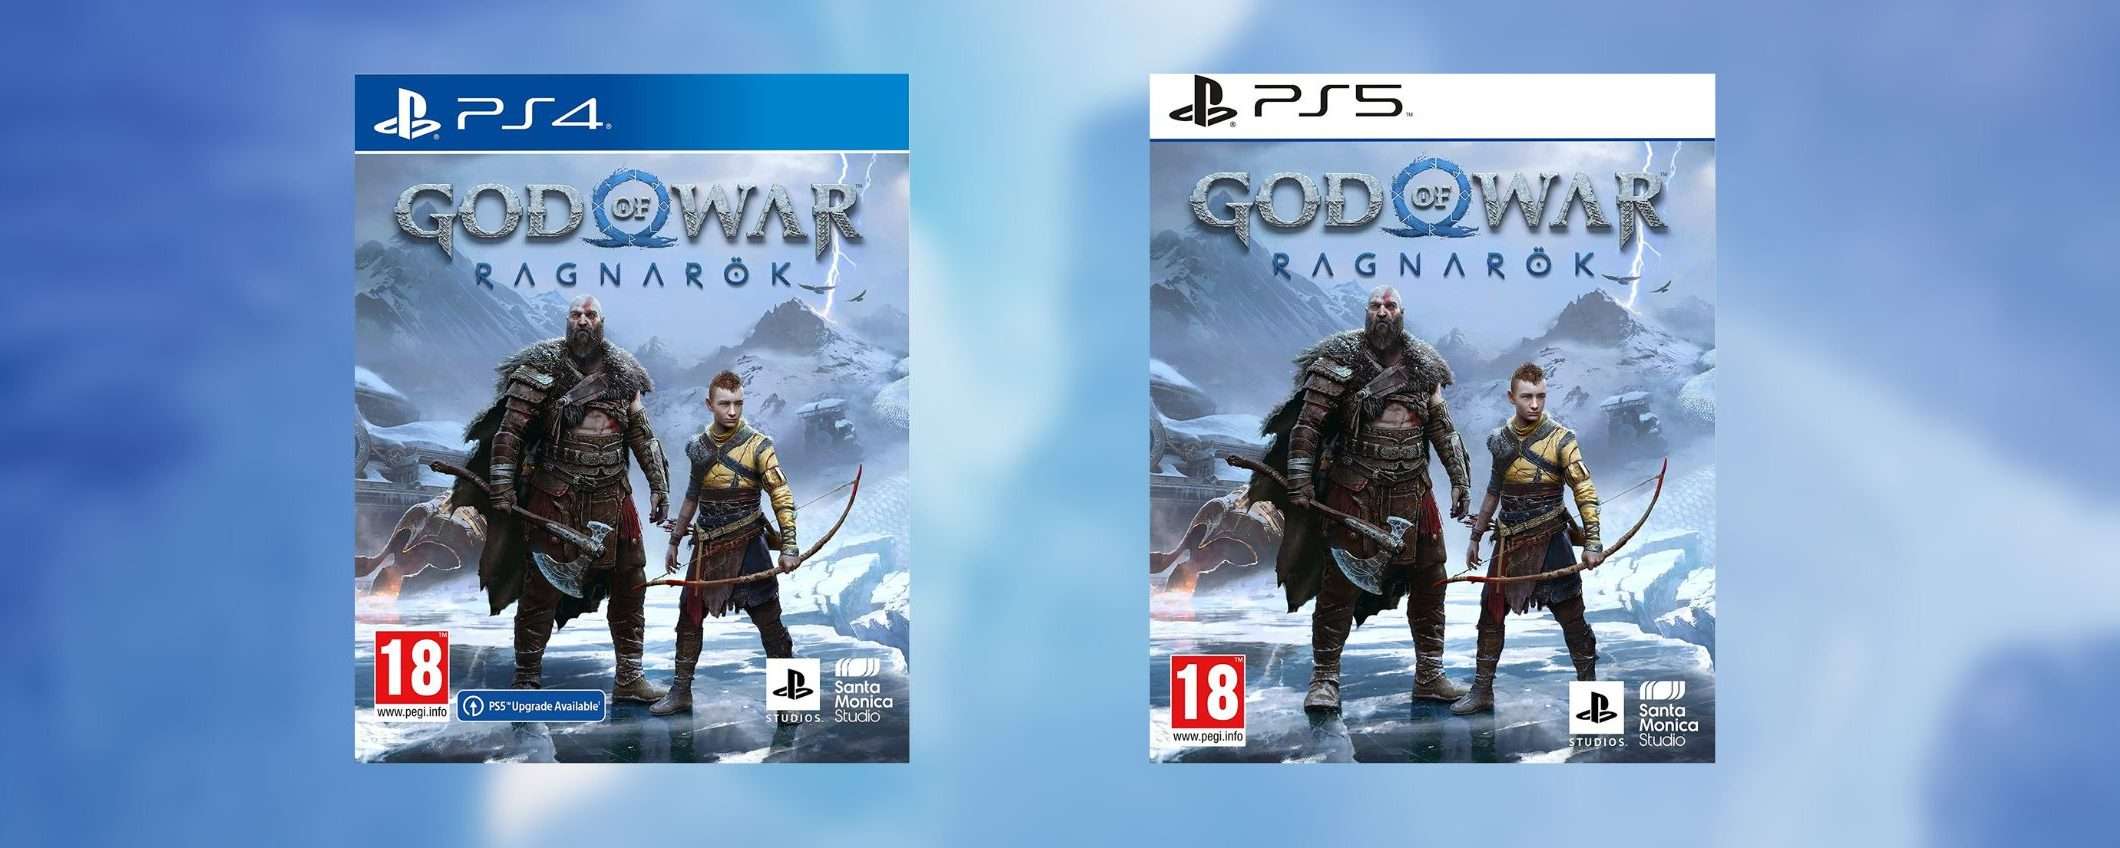 God of War Ragnarok disponibile per PS4 e PS5: le migliori offerte